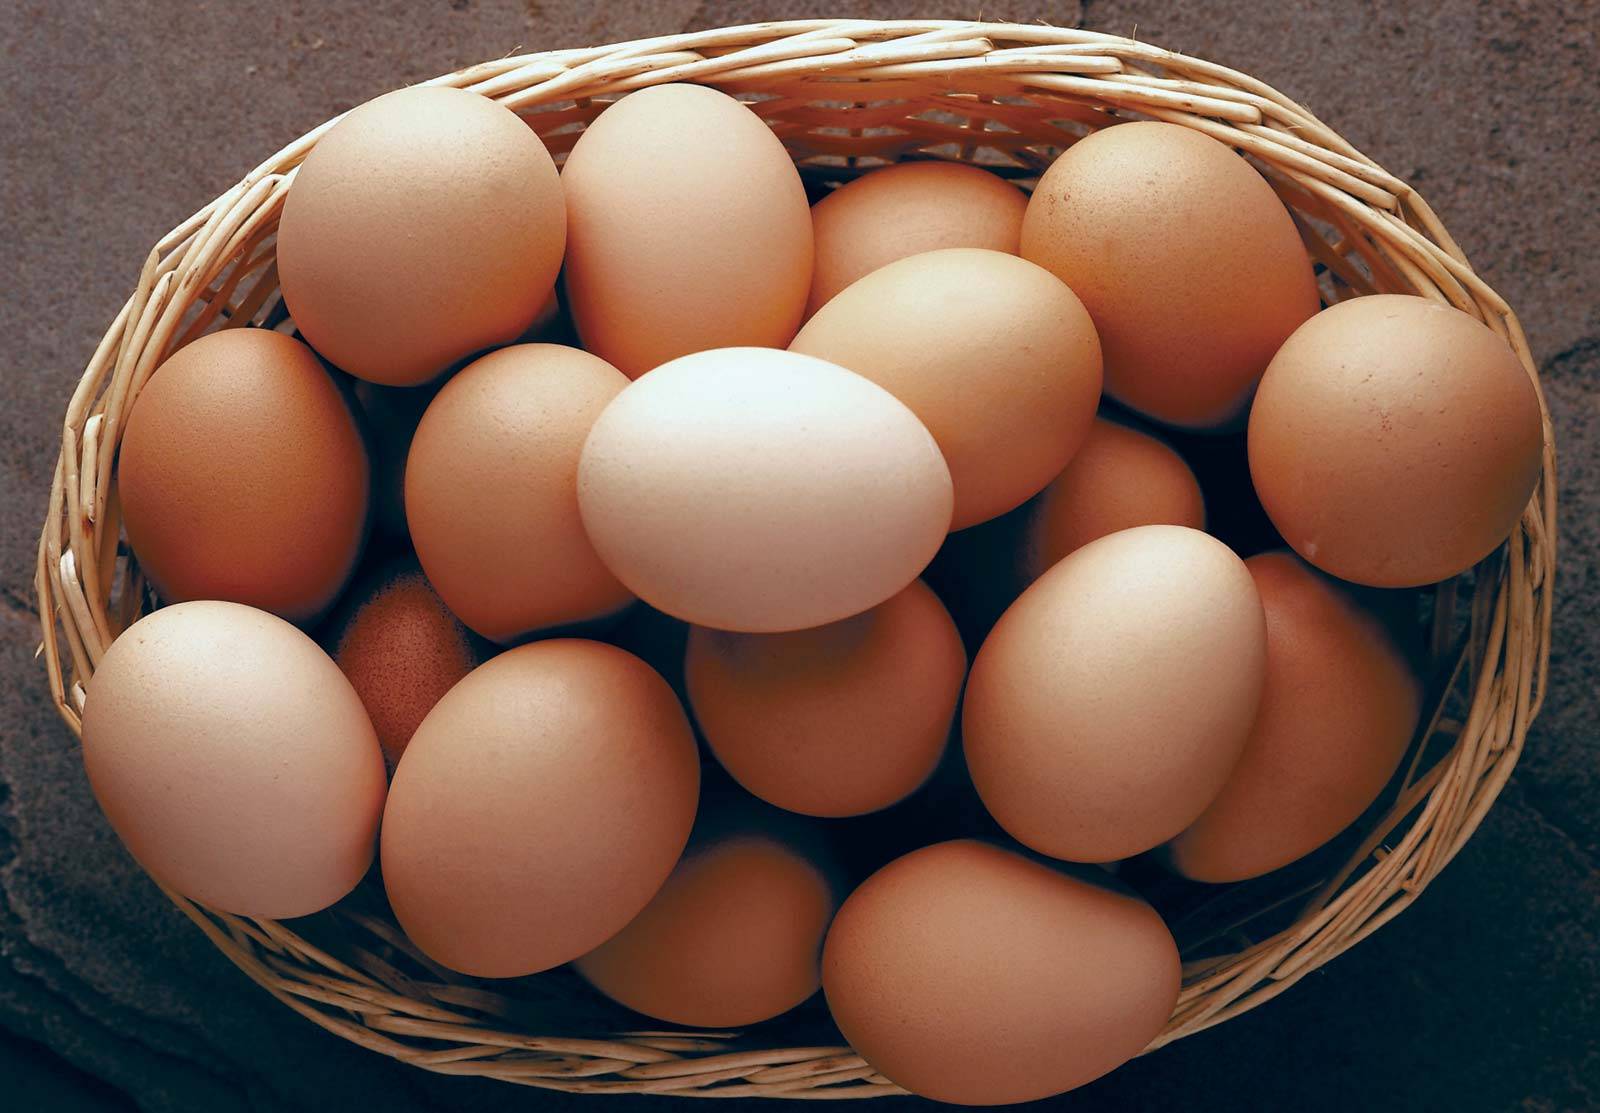 Grenada faces an egg shortage